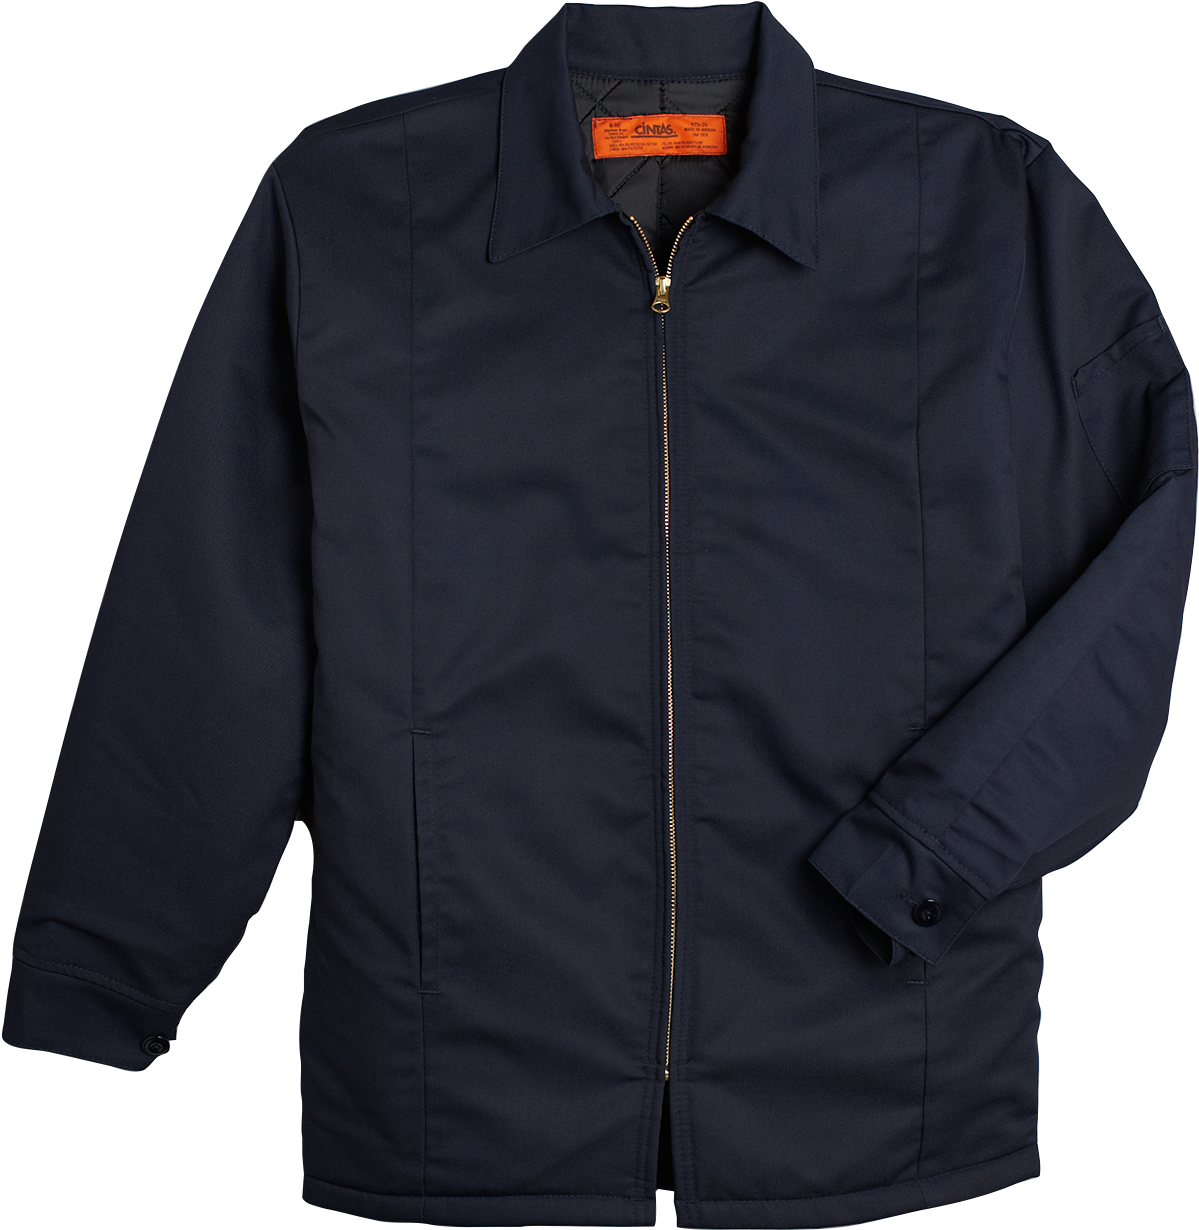 Hip Length Jacket - Jacket (1500x1500), Png Download